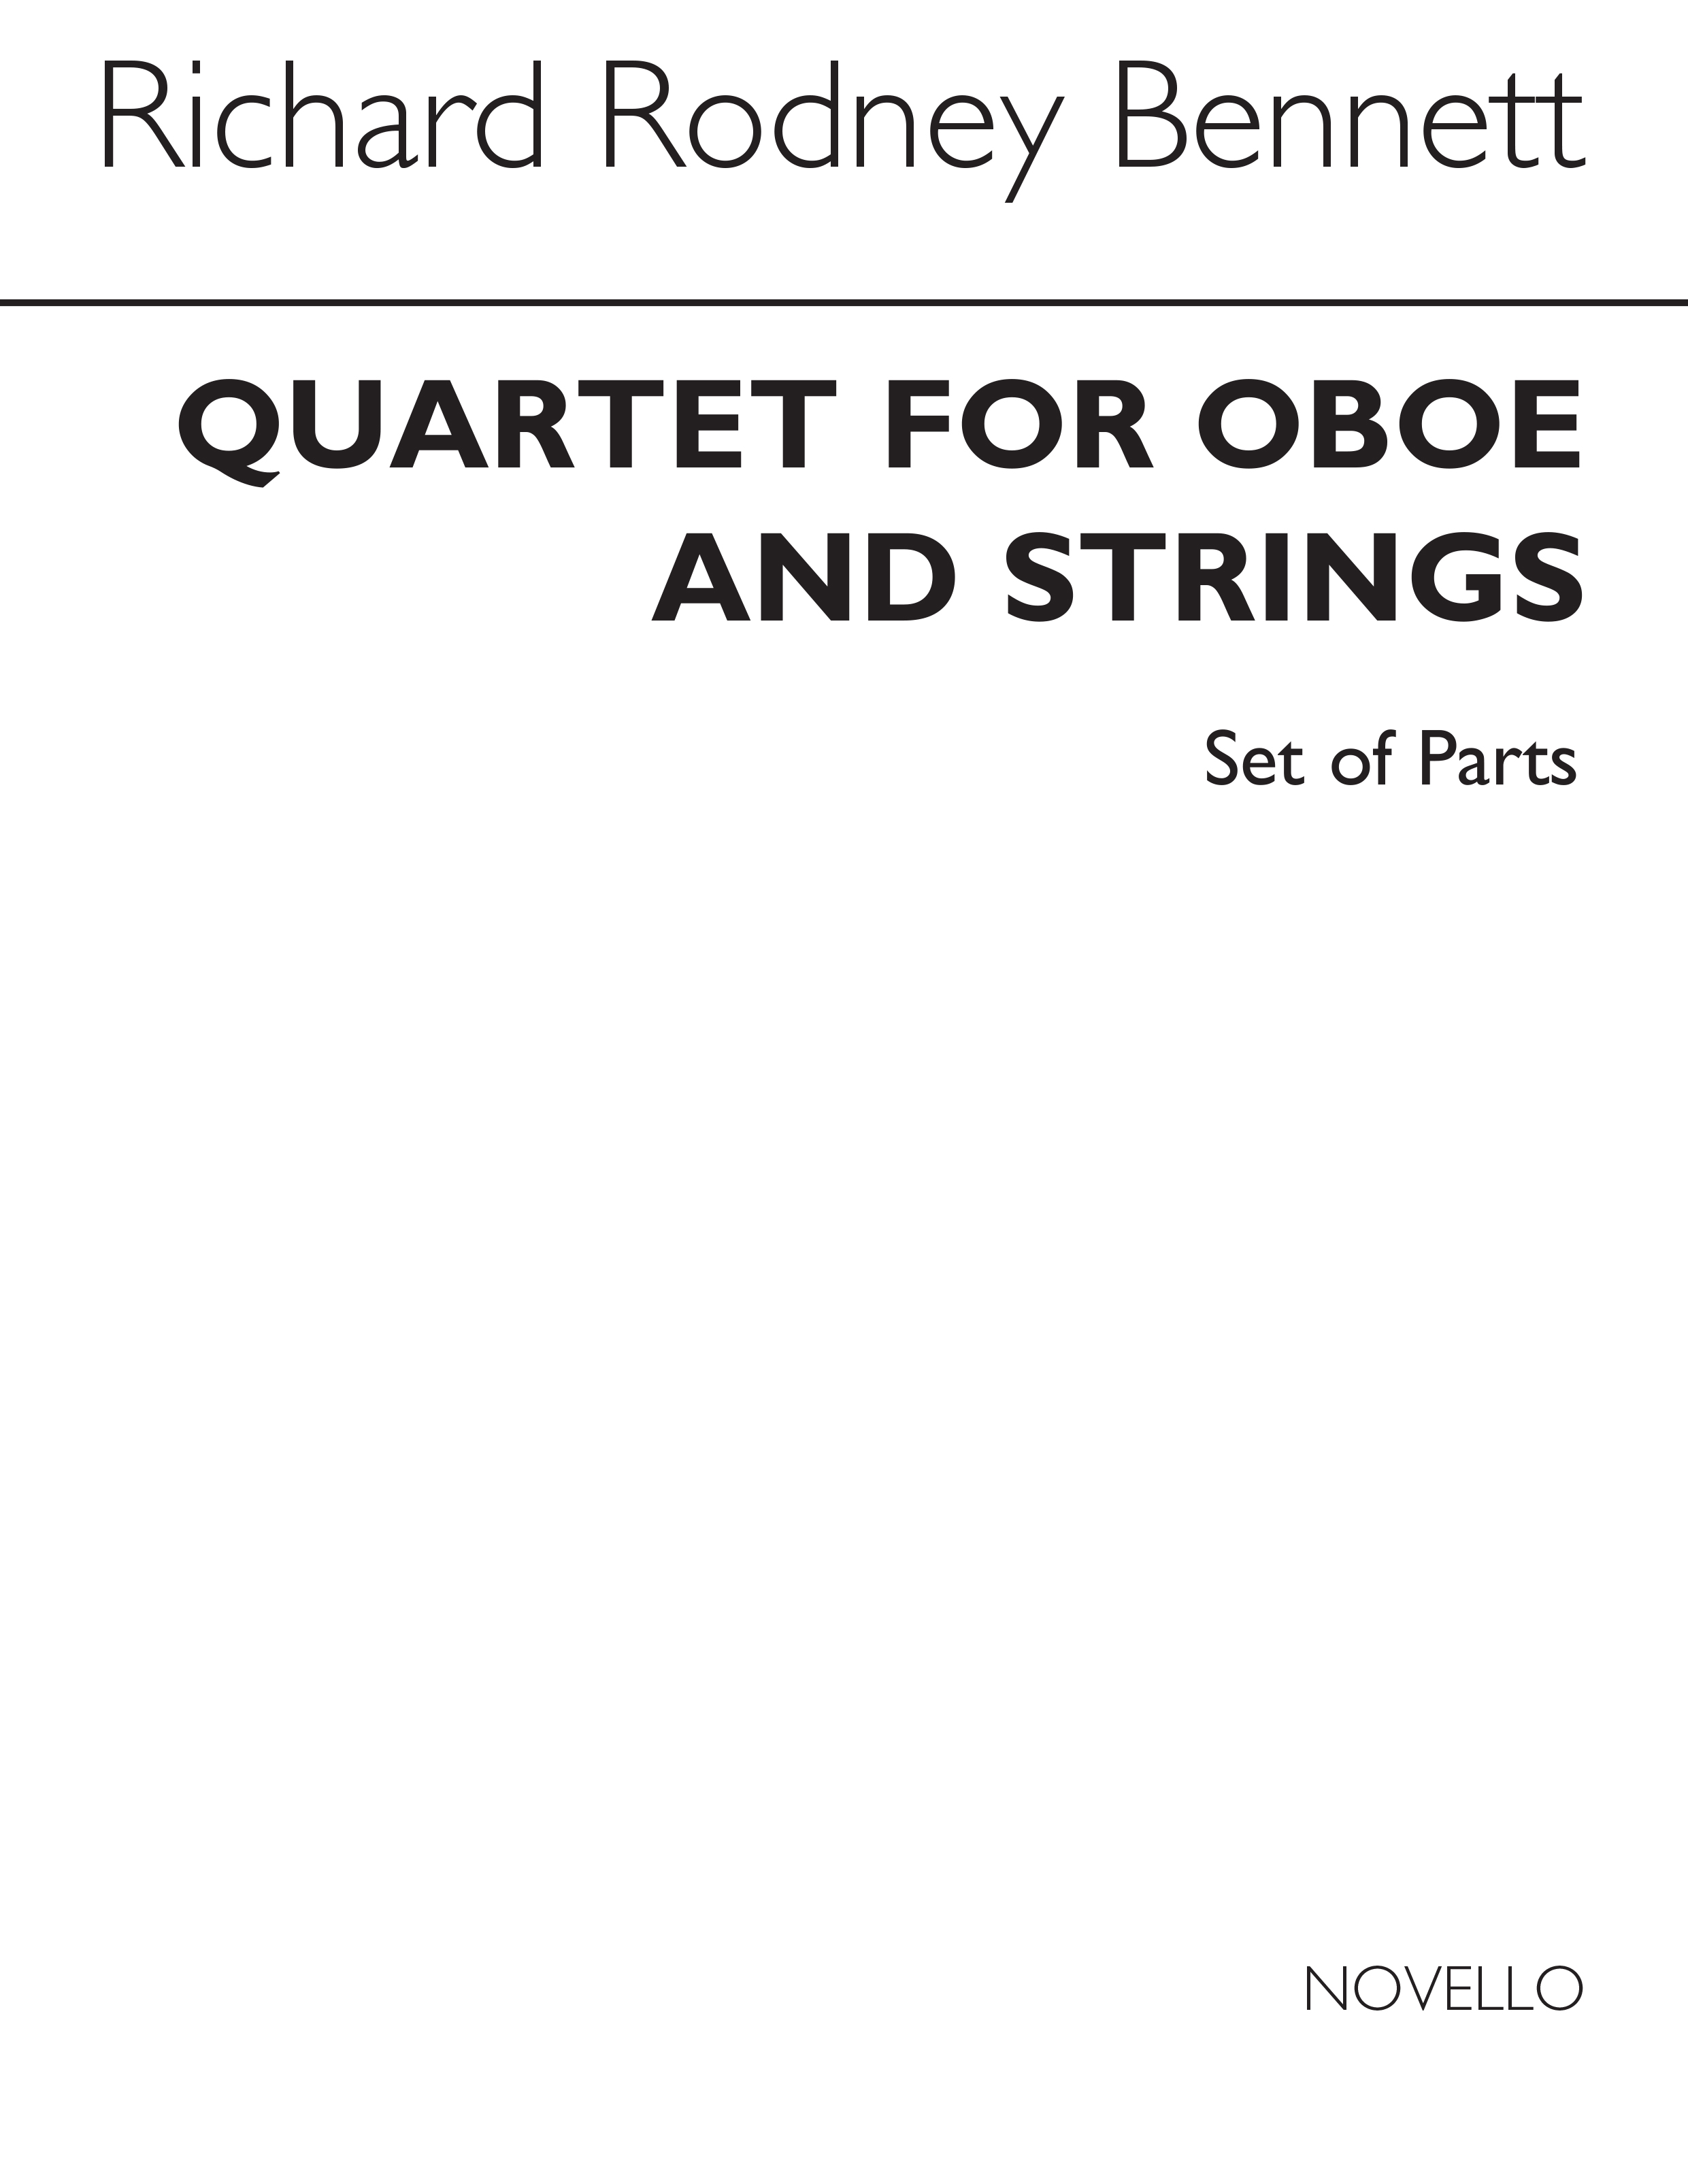 RR Bennett: Quartet For Oboe and Strings (Parts)